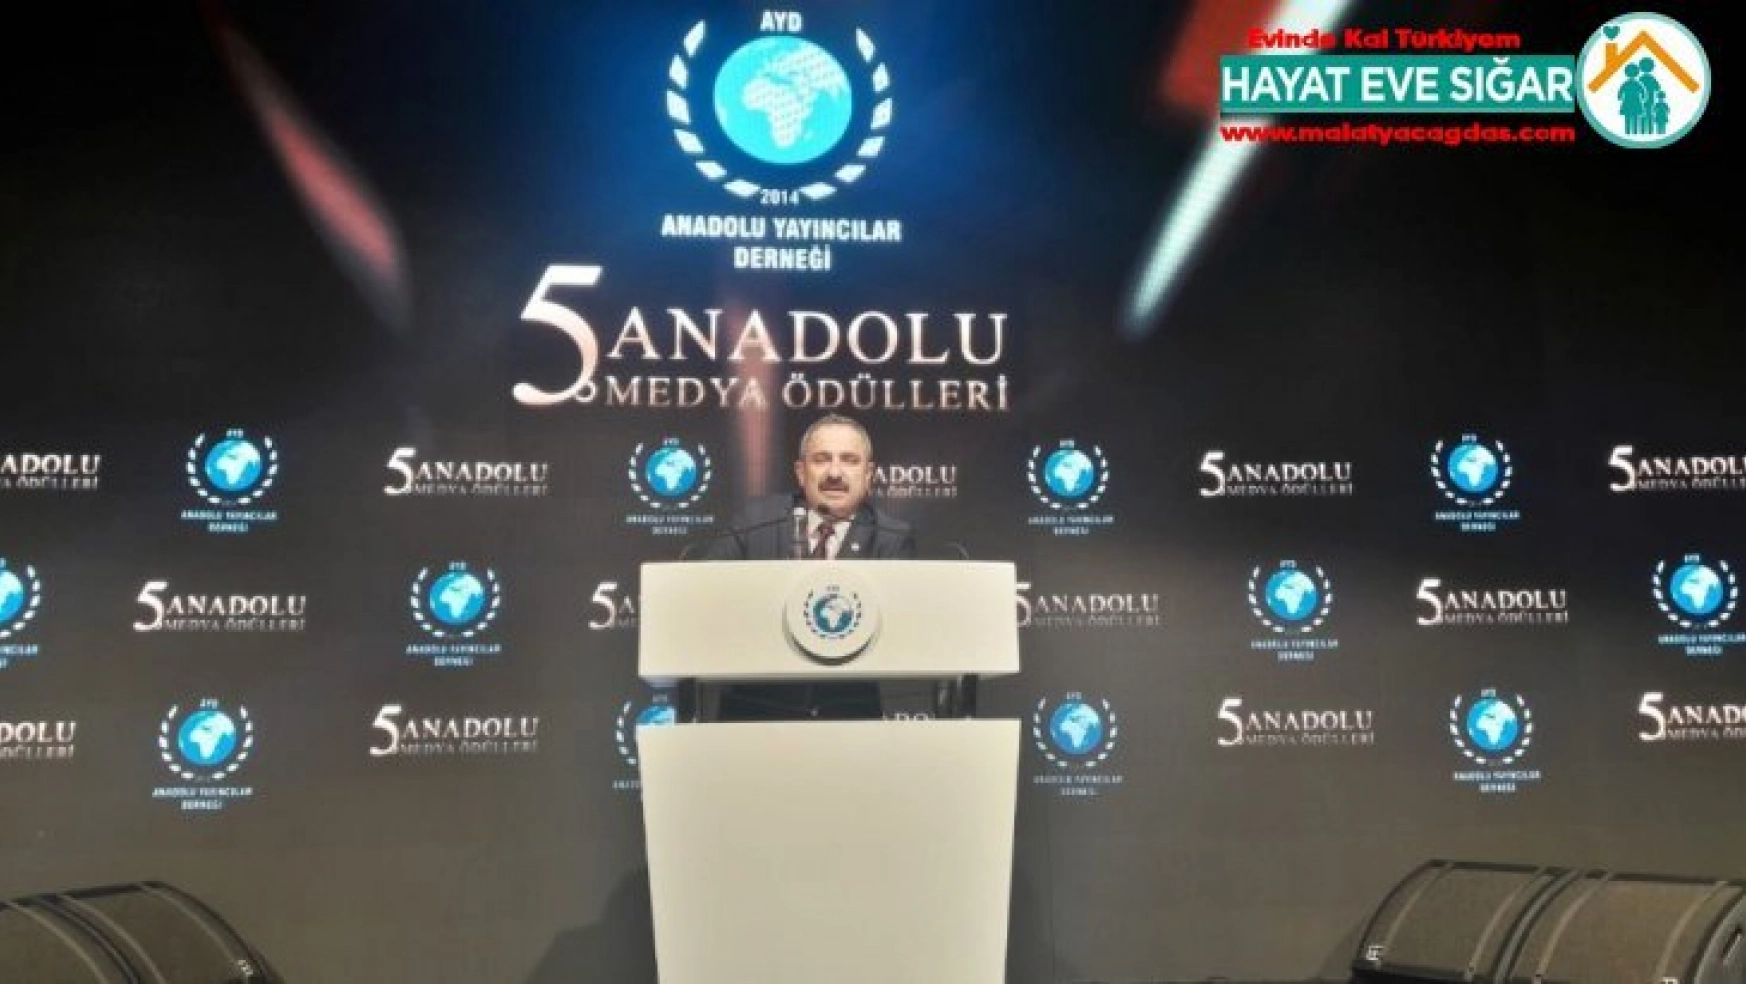 160 medya kuruluşundan Cumhurbaşkanı Erdoğan ve TÜRKSAT'a teşekkür